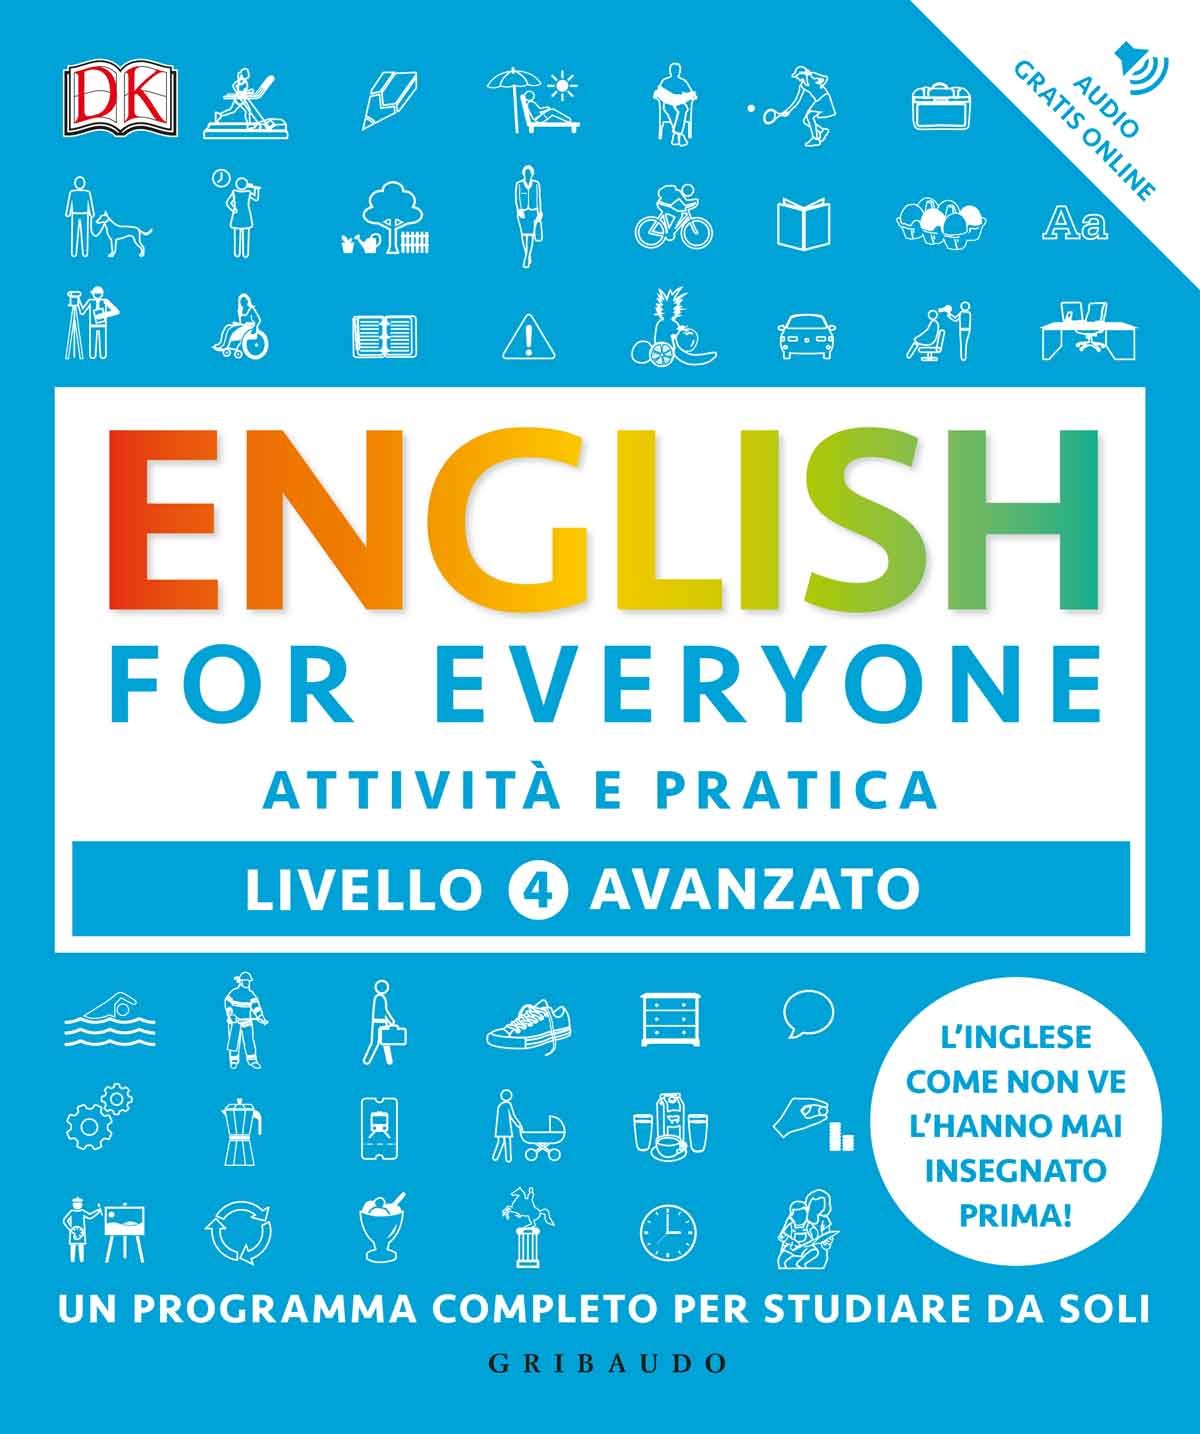 English for everyone - Livello 4 avanzato - Attività e pratica